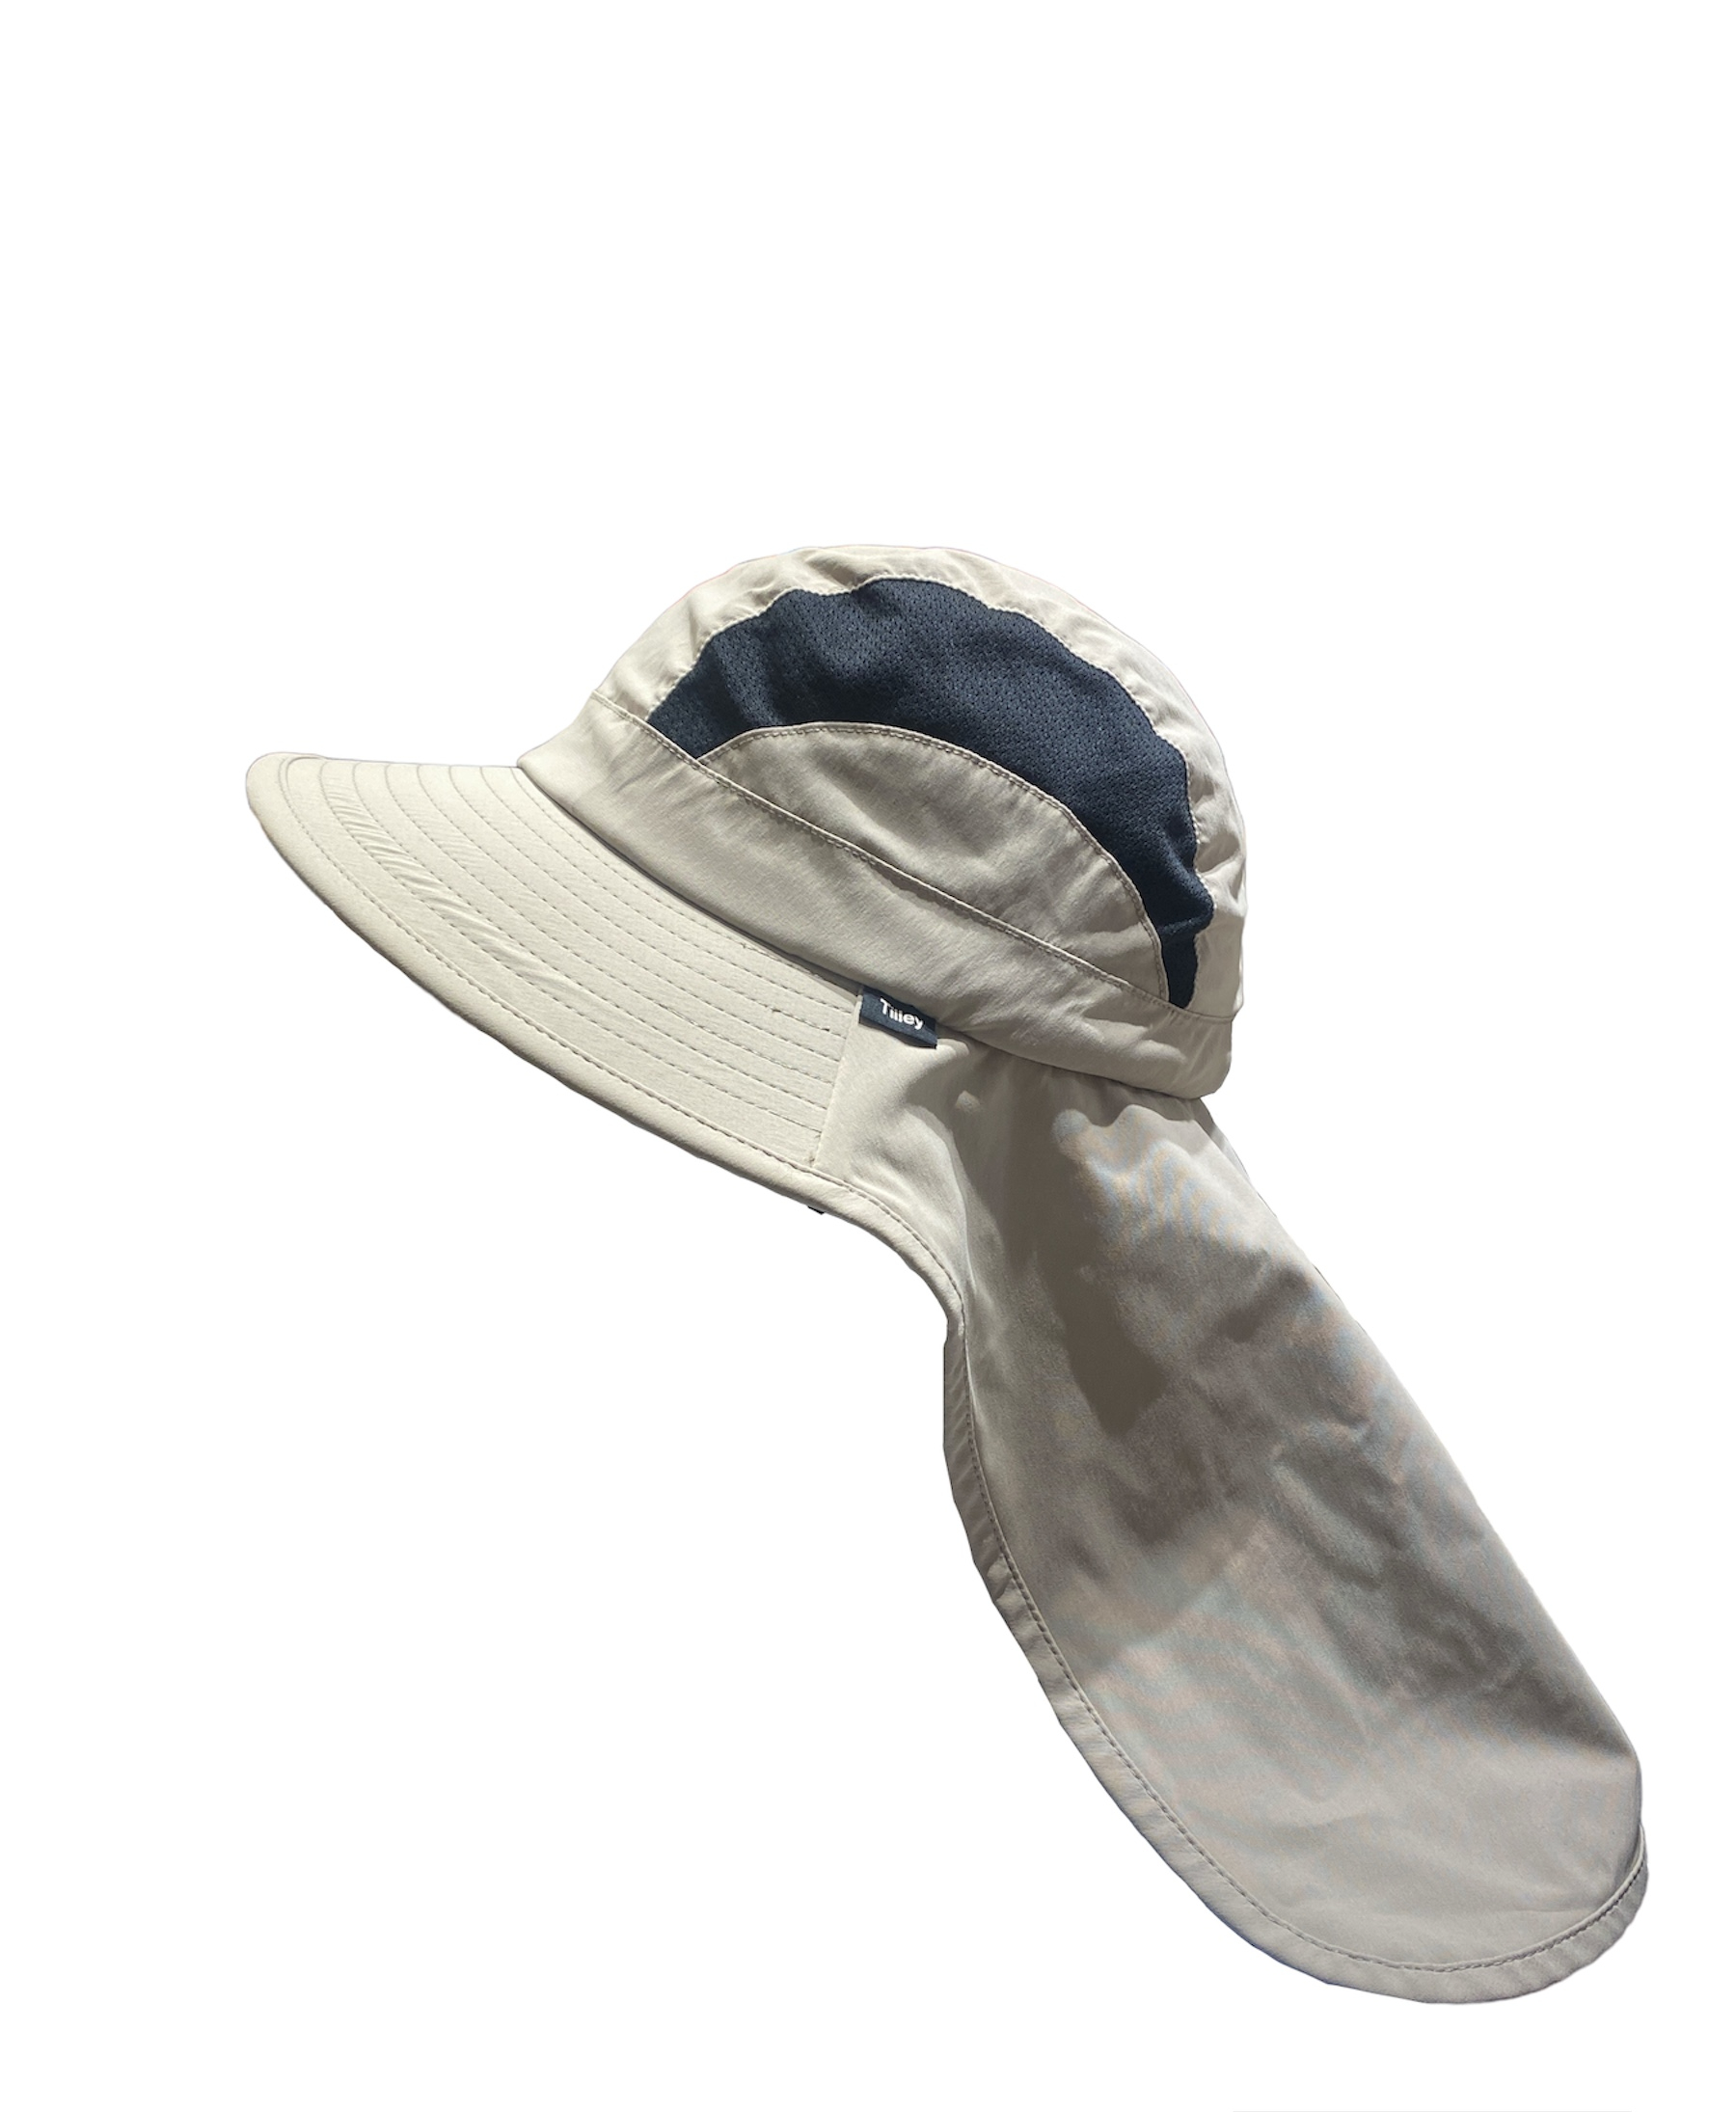 Chapeau saharienne Tilley anti UV, disponible en taille M, L et XL.